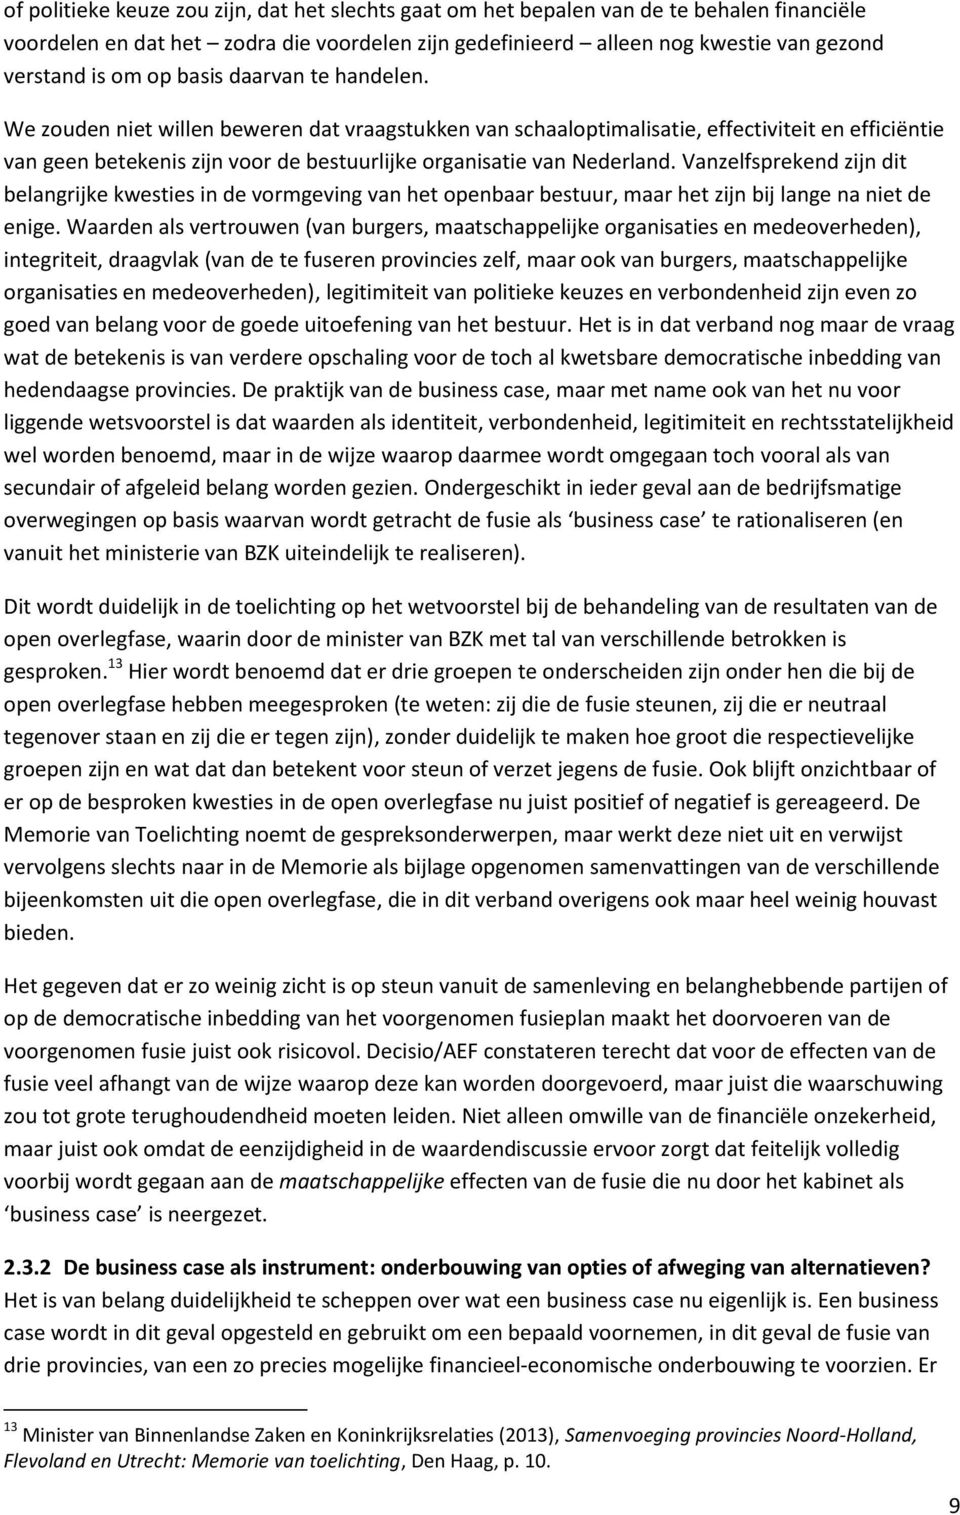 We zouden niet willen beweren dat vraagstukken van schaaloptimalisatie, effectiviteit en efficiëntie van geen betekenis zijn voor de bestuurlijke organisatie van Nederland.